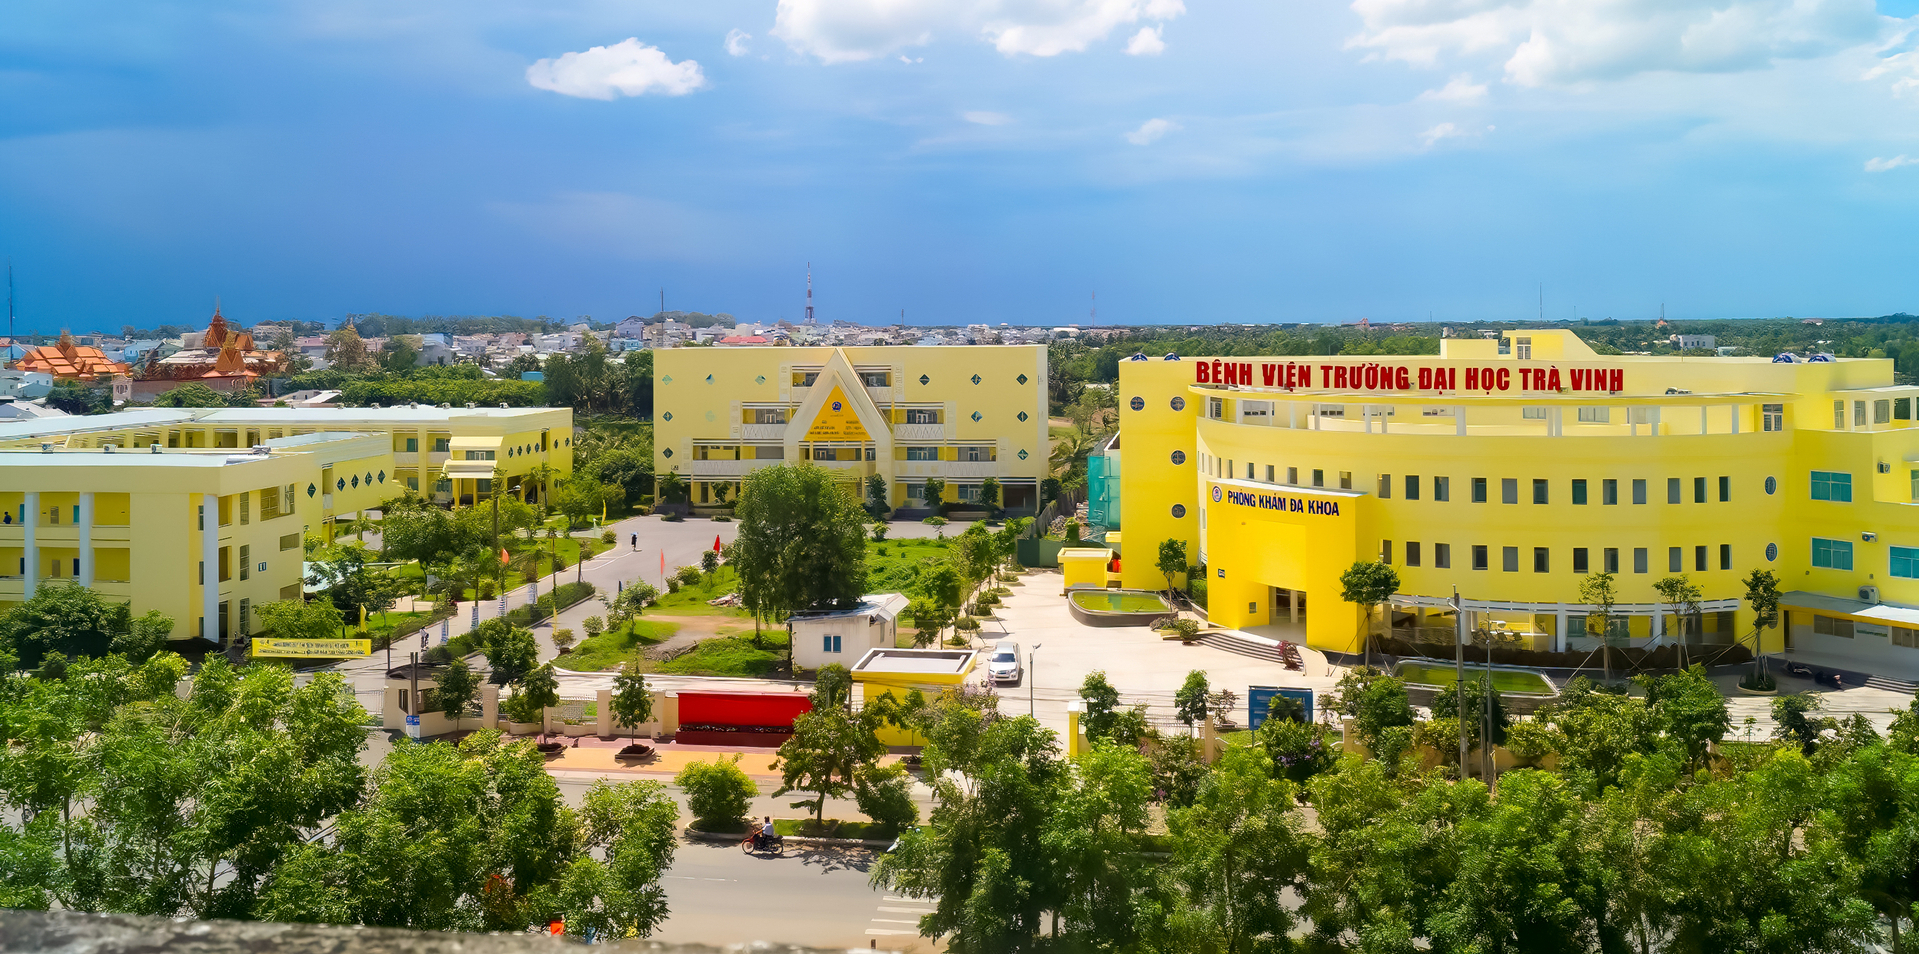 Khuôn viên Bệnh viện Trường Đại học Trà Vinh được đầu tư khang trang, cơ sở vật chất hiện đại. 